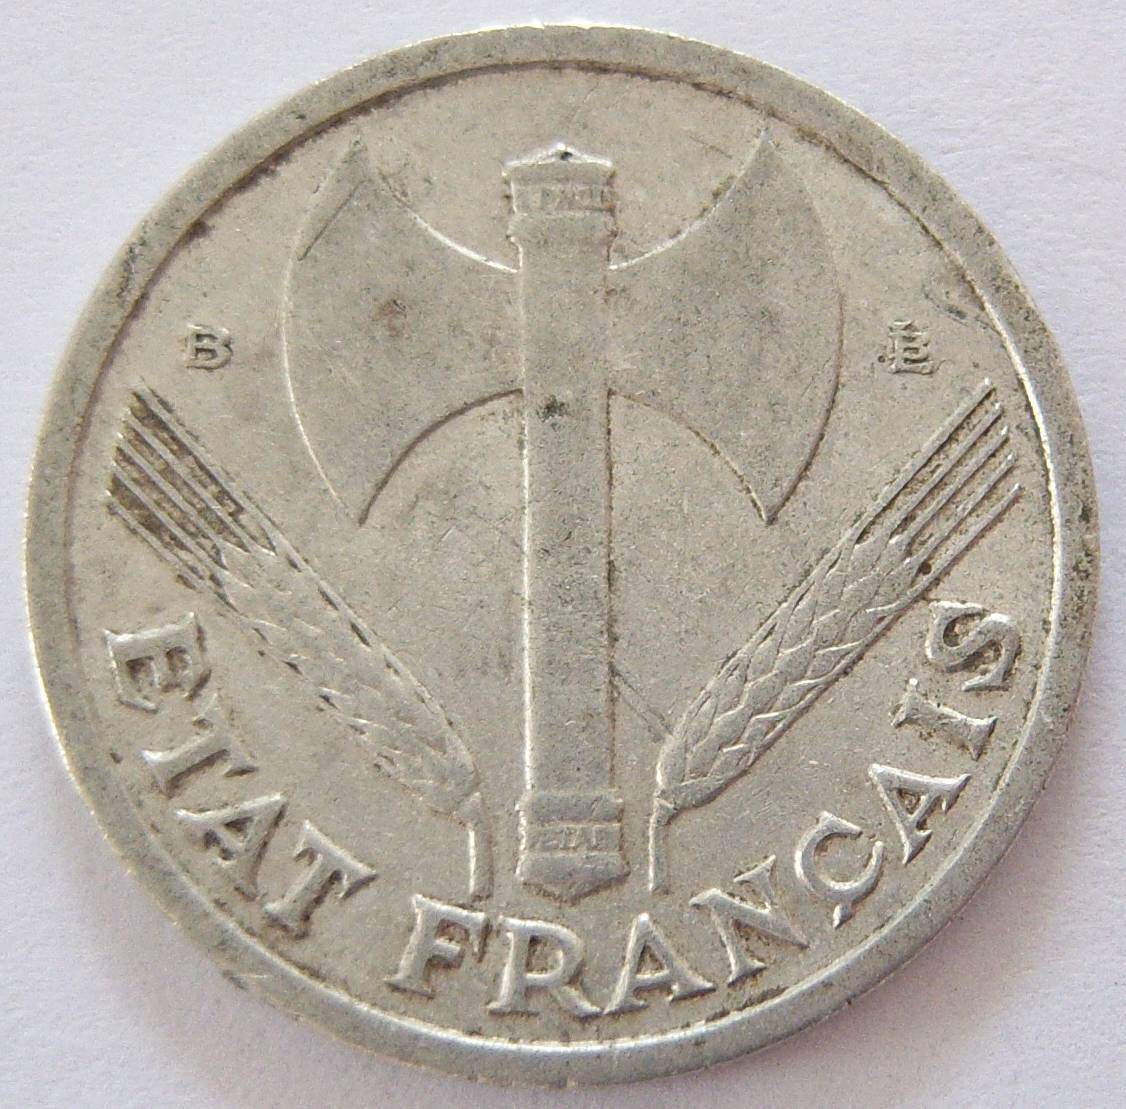  Frankreich 1 Franc 1944 B   